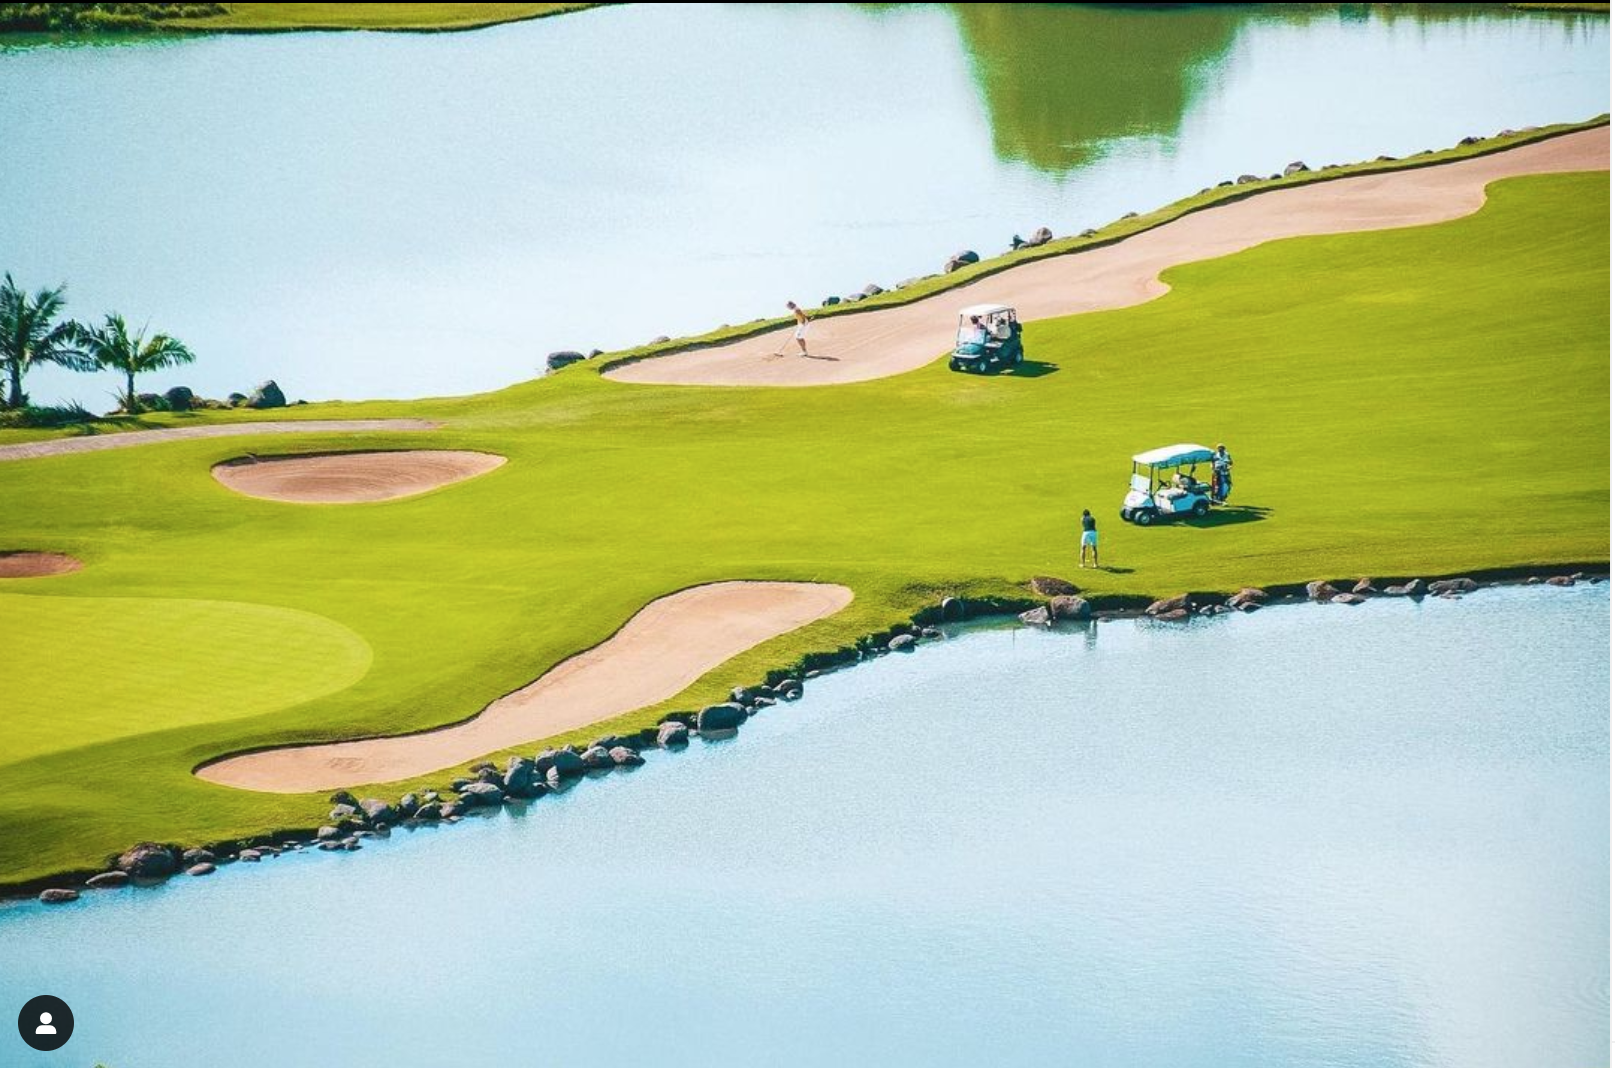 e lagon turquoise de l'océan Indien - la toile de fond parfaite pour une expérience de golf inoubliable au Heritage Golf Club.